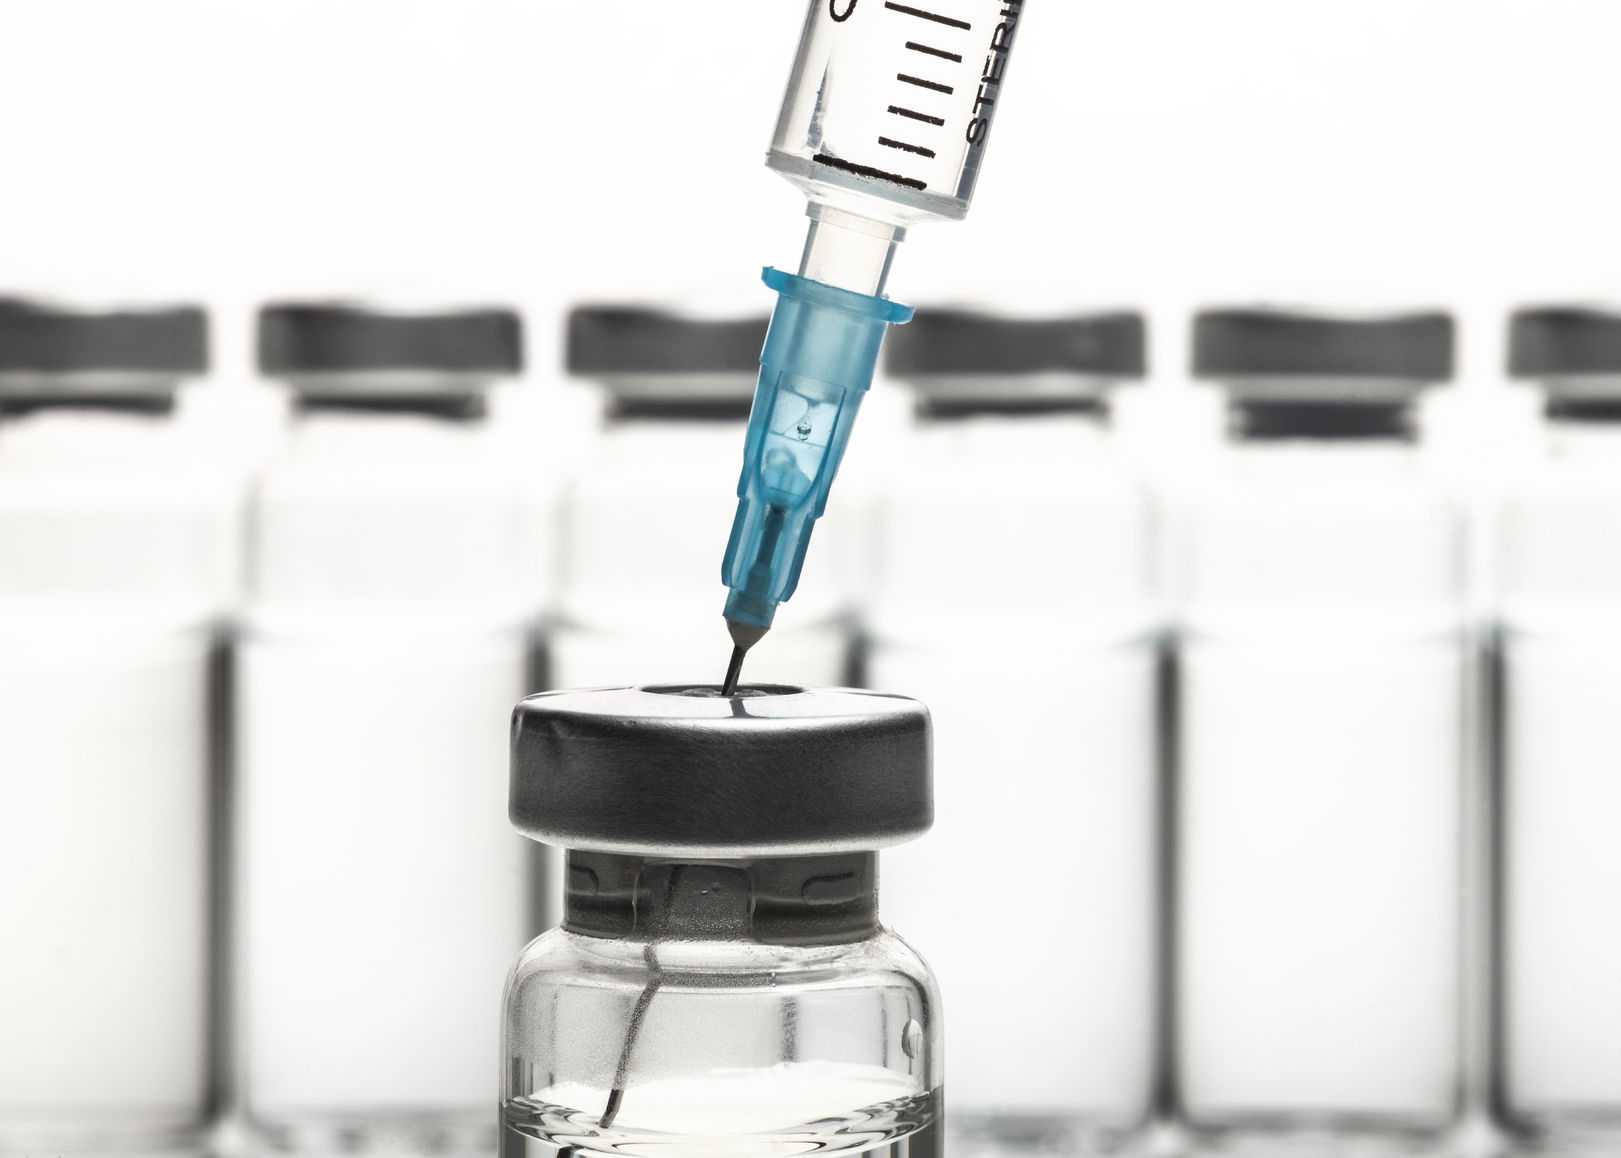 vacuna que retiran de su envase